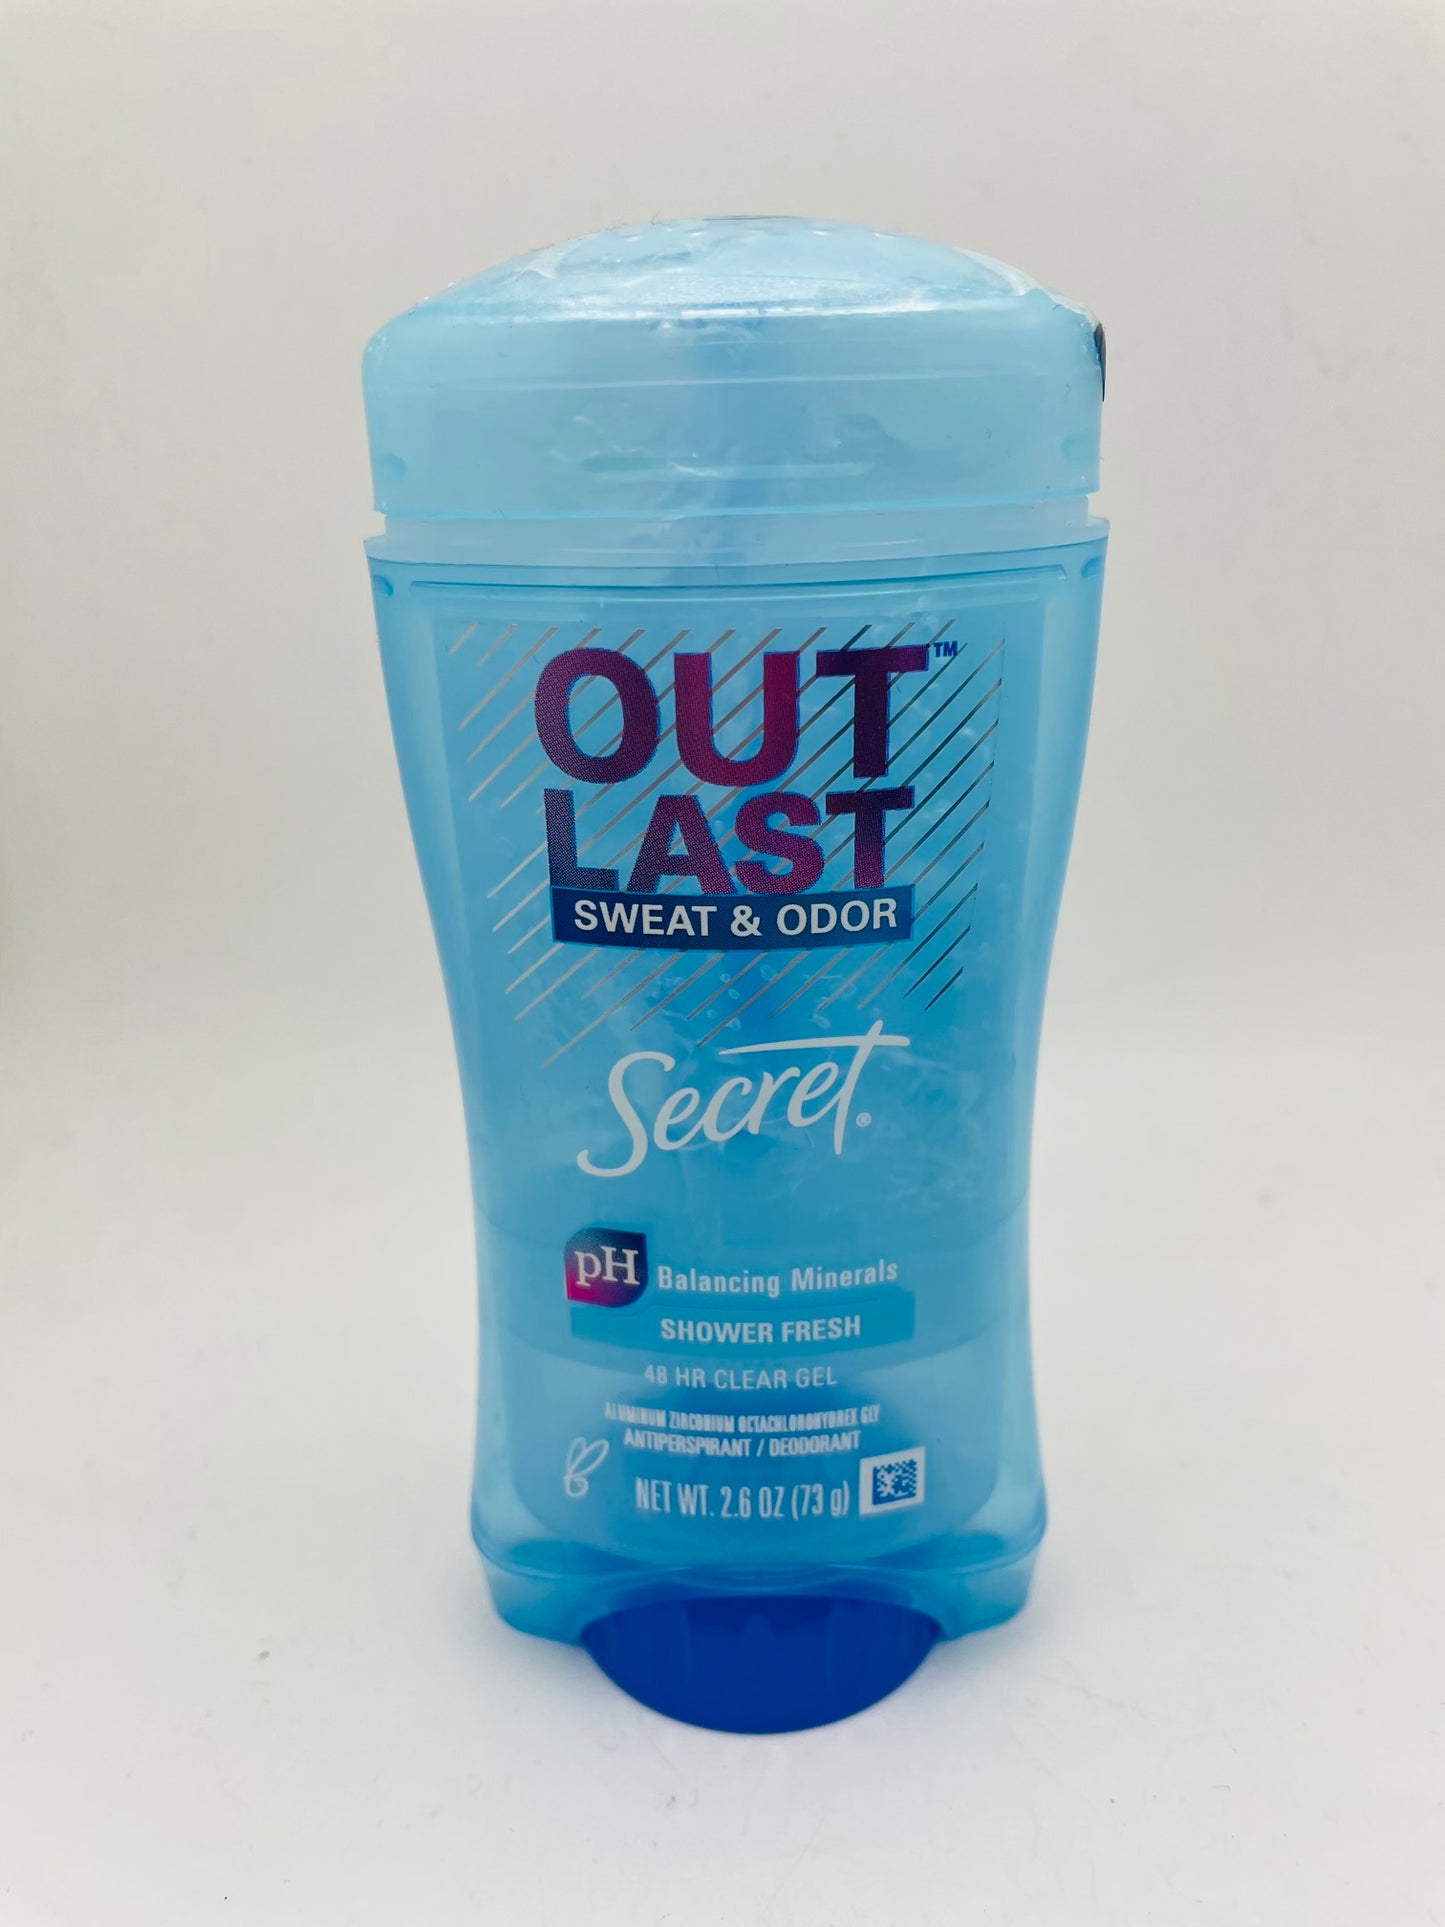 Secret out last sweat & odor